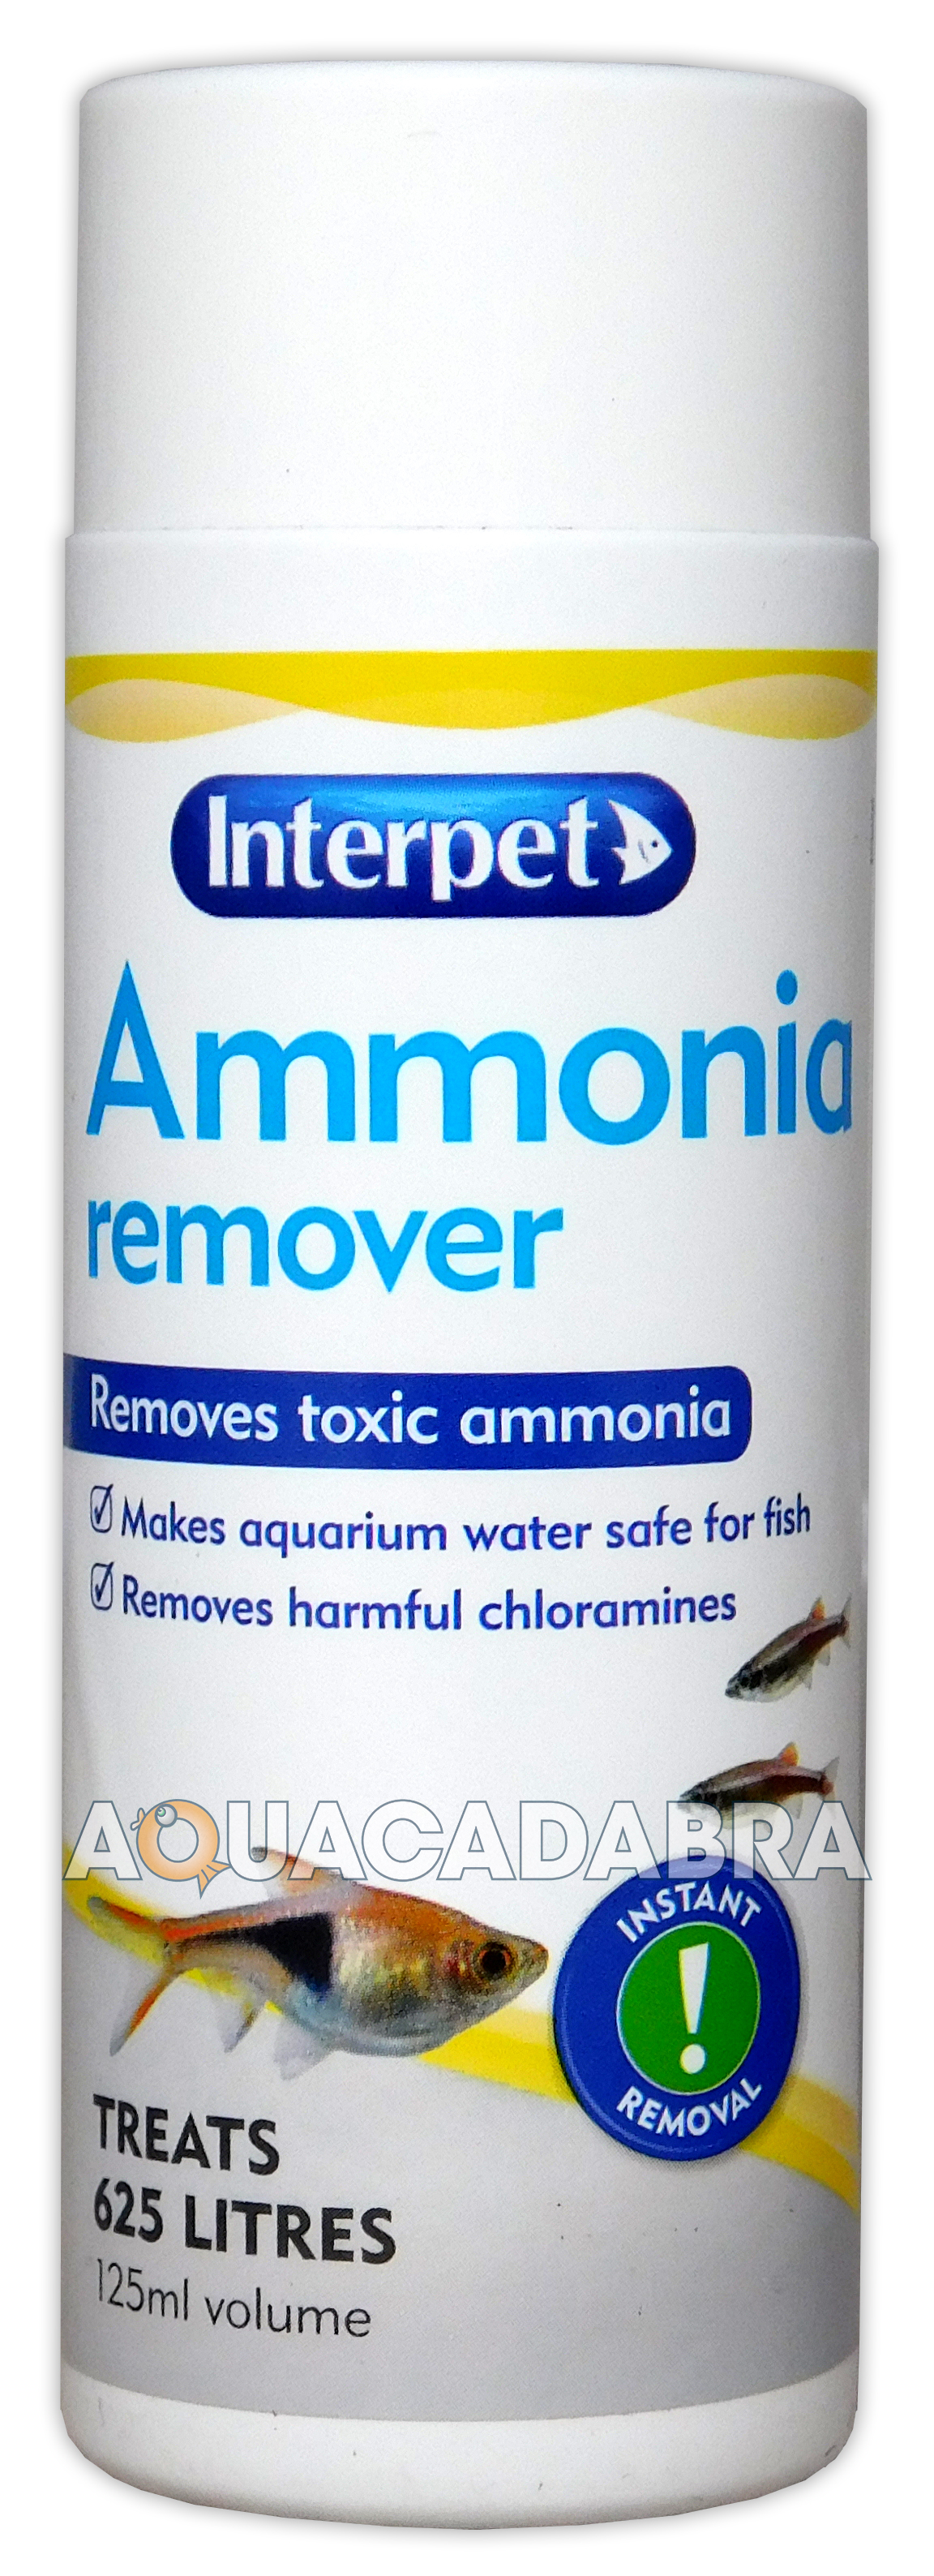 Best Ammonia Remover For Fish Tank Ammonia tank reduce fish remover aquarium fluval nylon bags remove gram pack